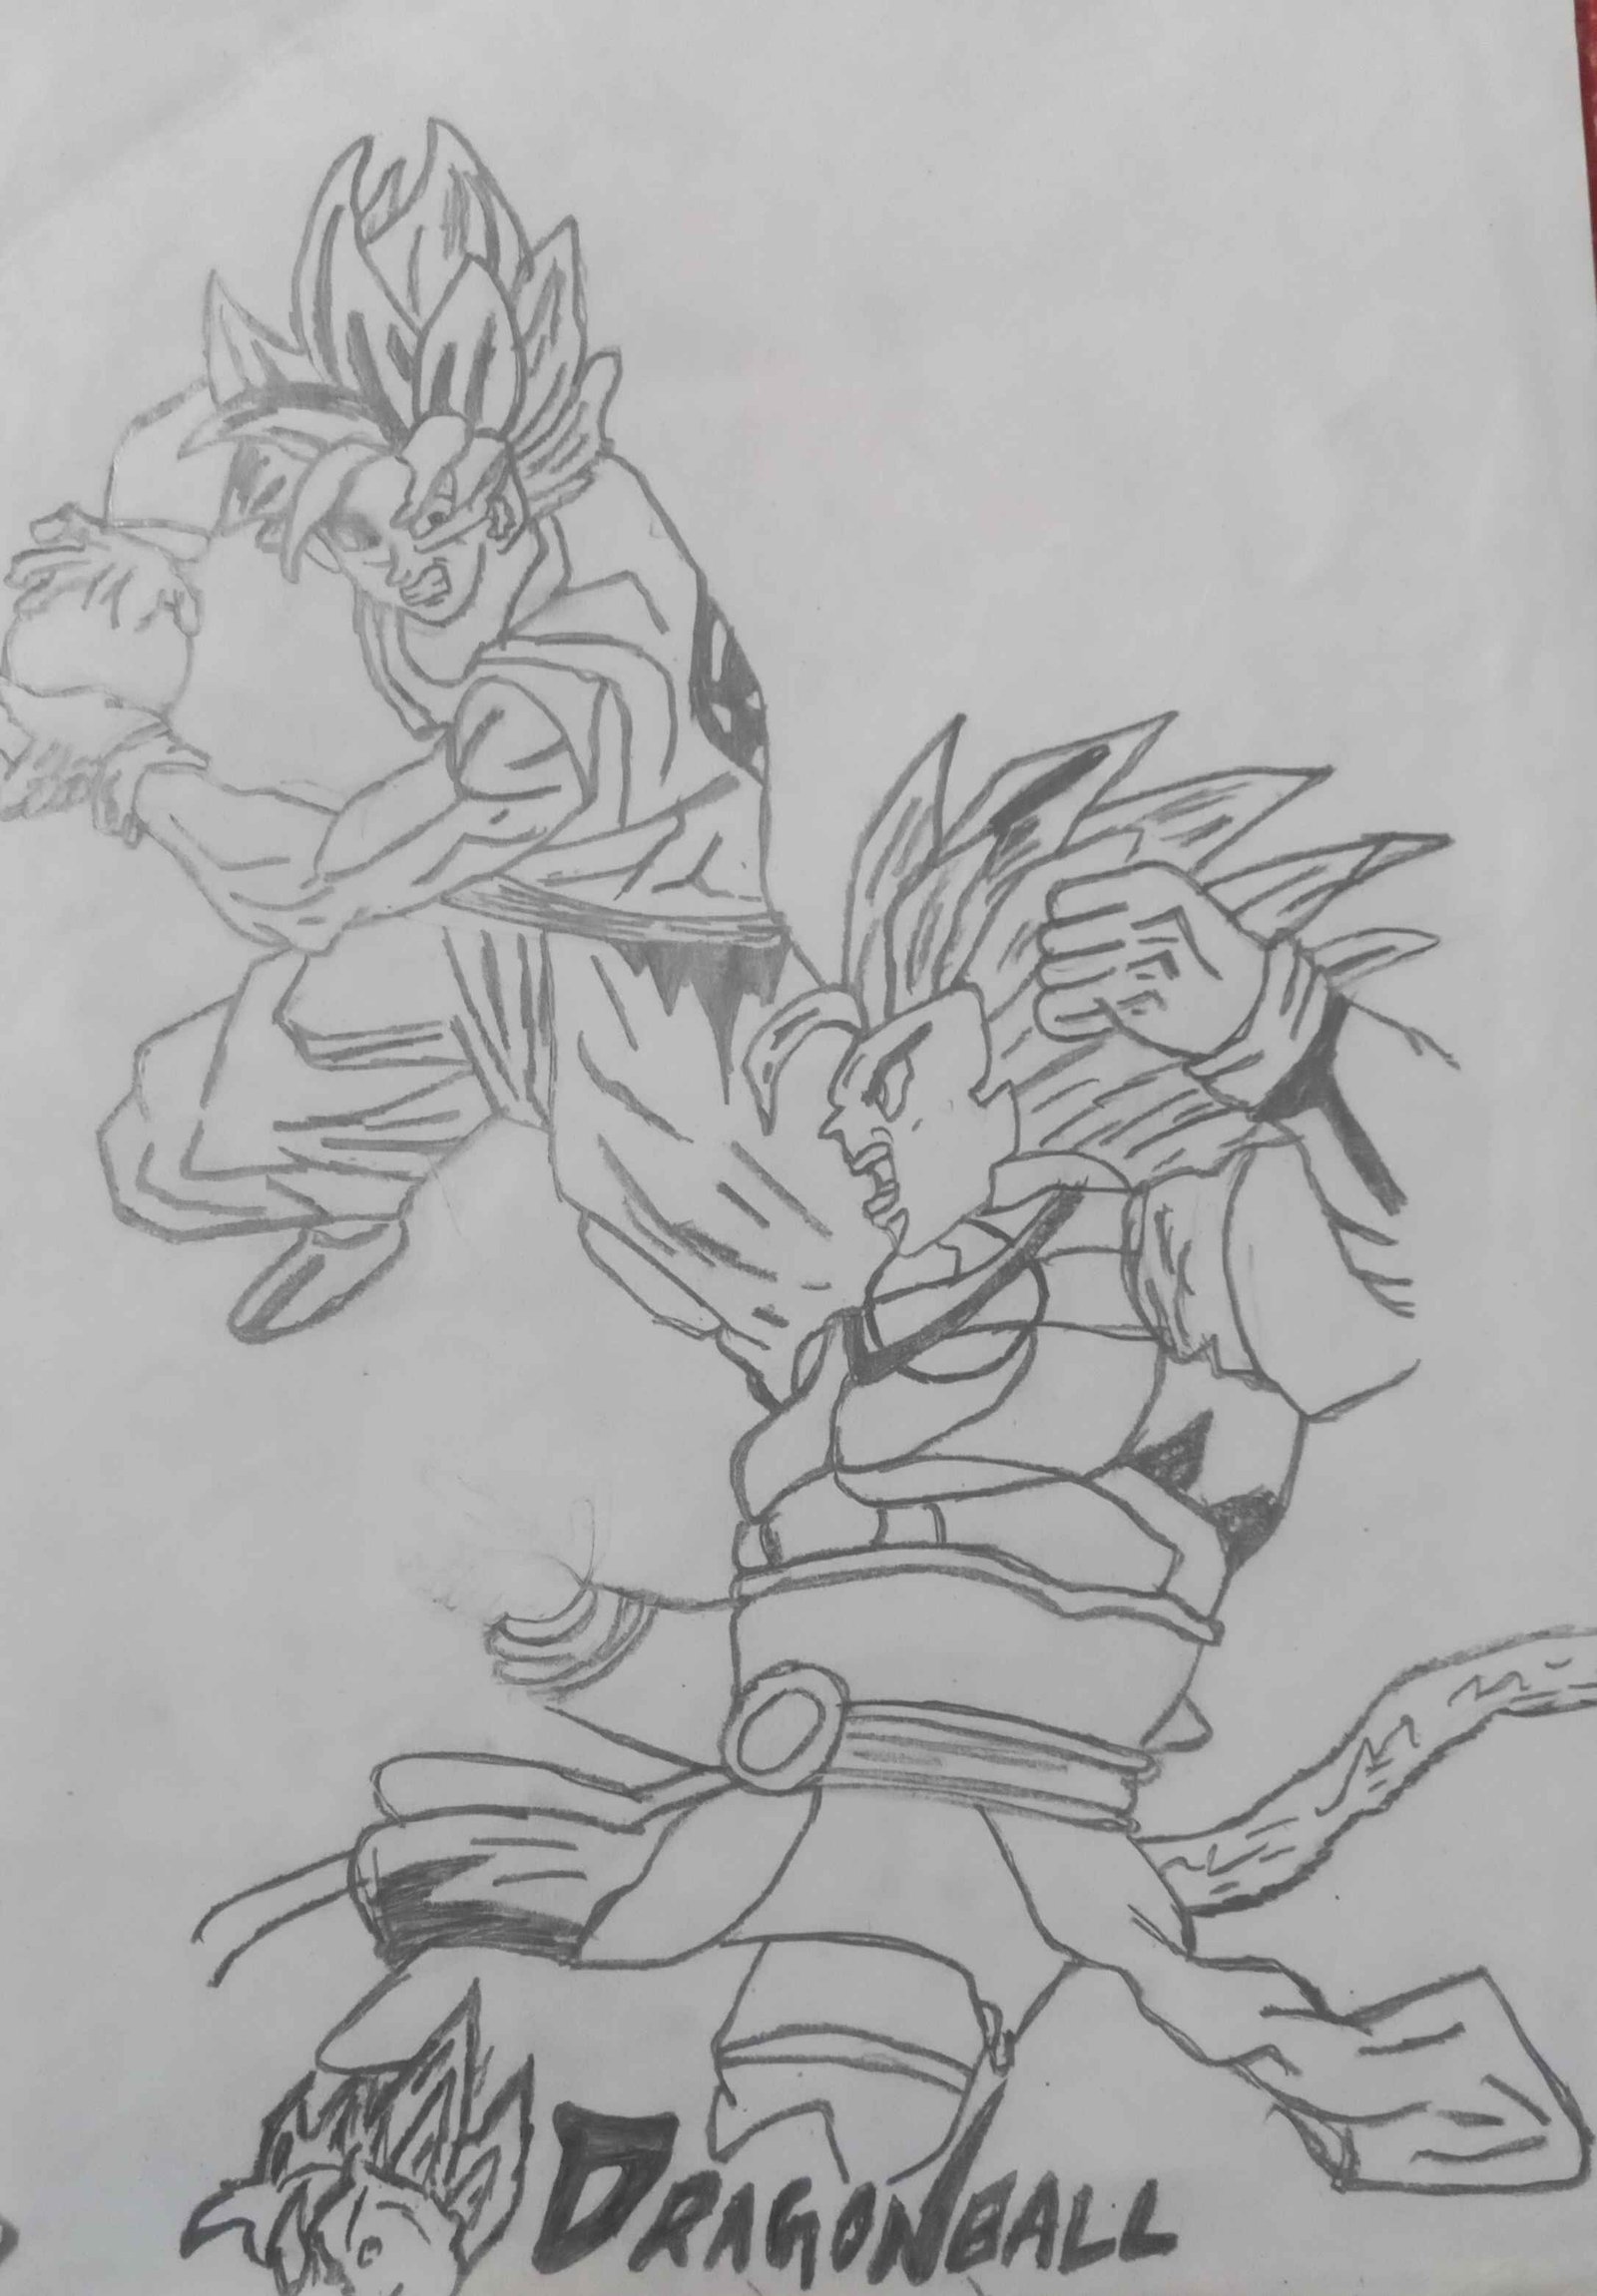 Goku kaioken vs Vegeta saiyan saga by TendouKai on DeviantArt